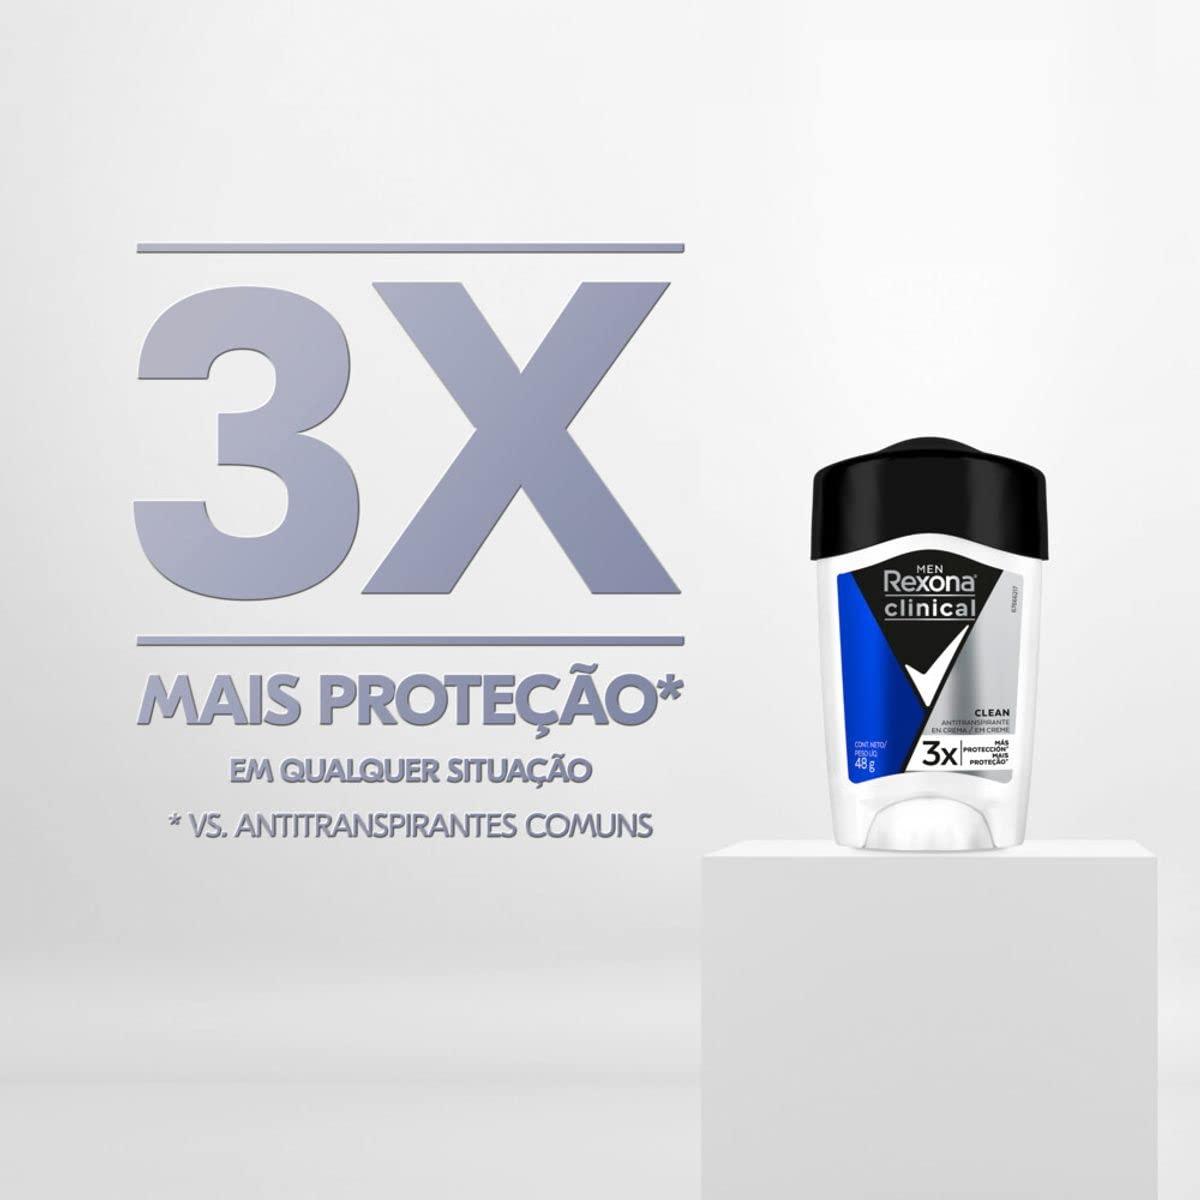 REXONA desodorante CLINICAL antitranspirante en crema para caballero 48 g